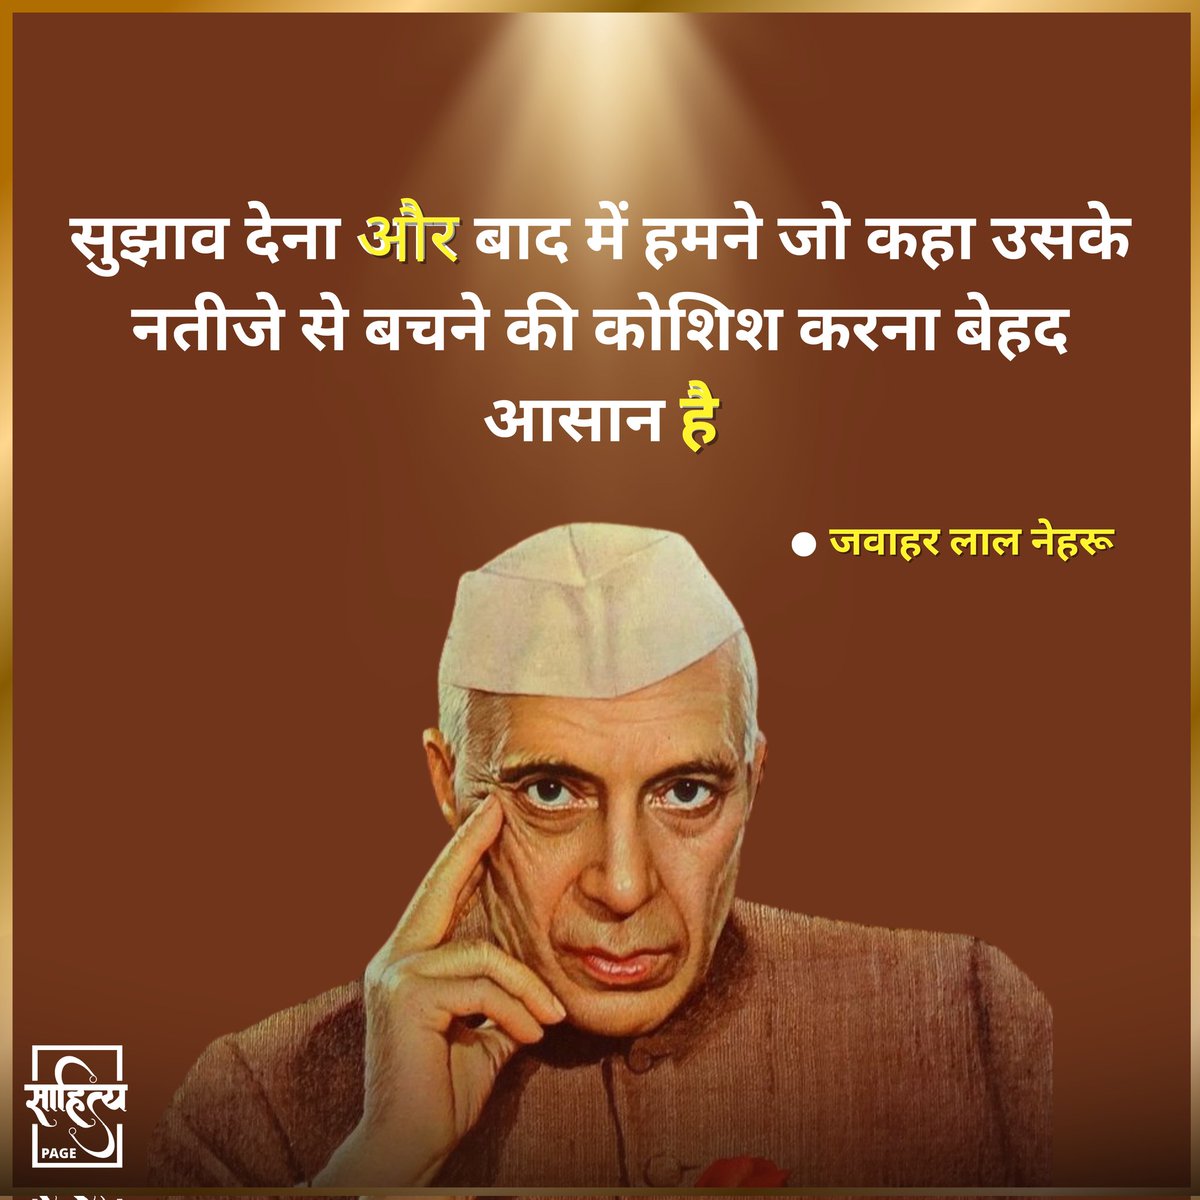 सुझाव देना और बाद में हमने जो कहा उसके नतीजे से बचने की कोशिश करना बेहद आसान है। 

– जवाहर लाल नेहरू 
.
#SahityaPage #hindiquotes #javaharlalnehru #jawaharlalnehru #hindi #quotes #motivation #inspiration